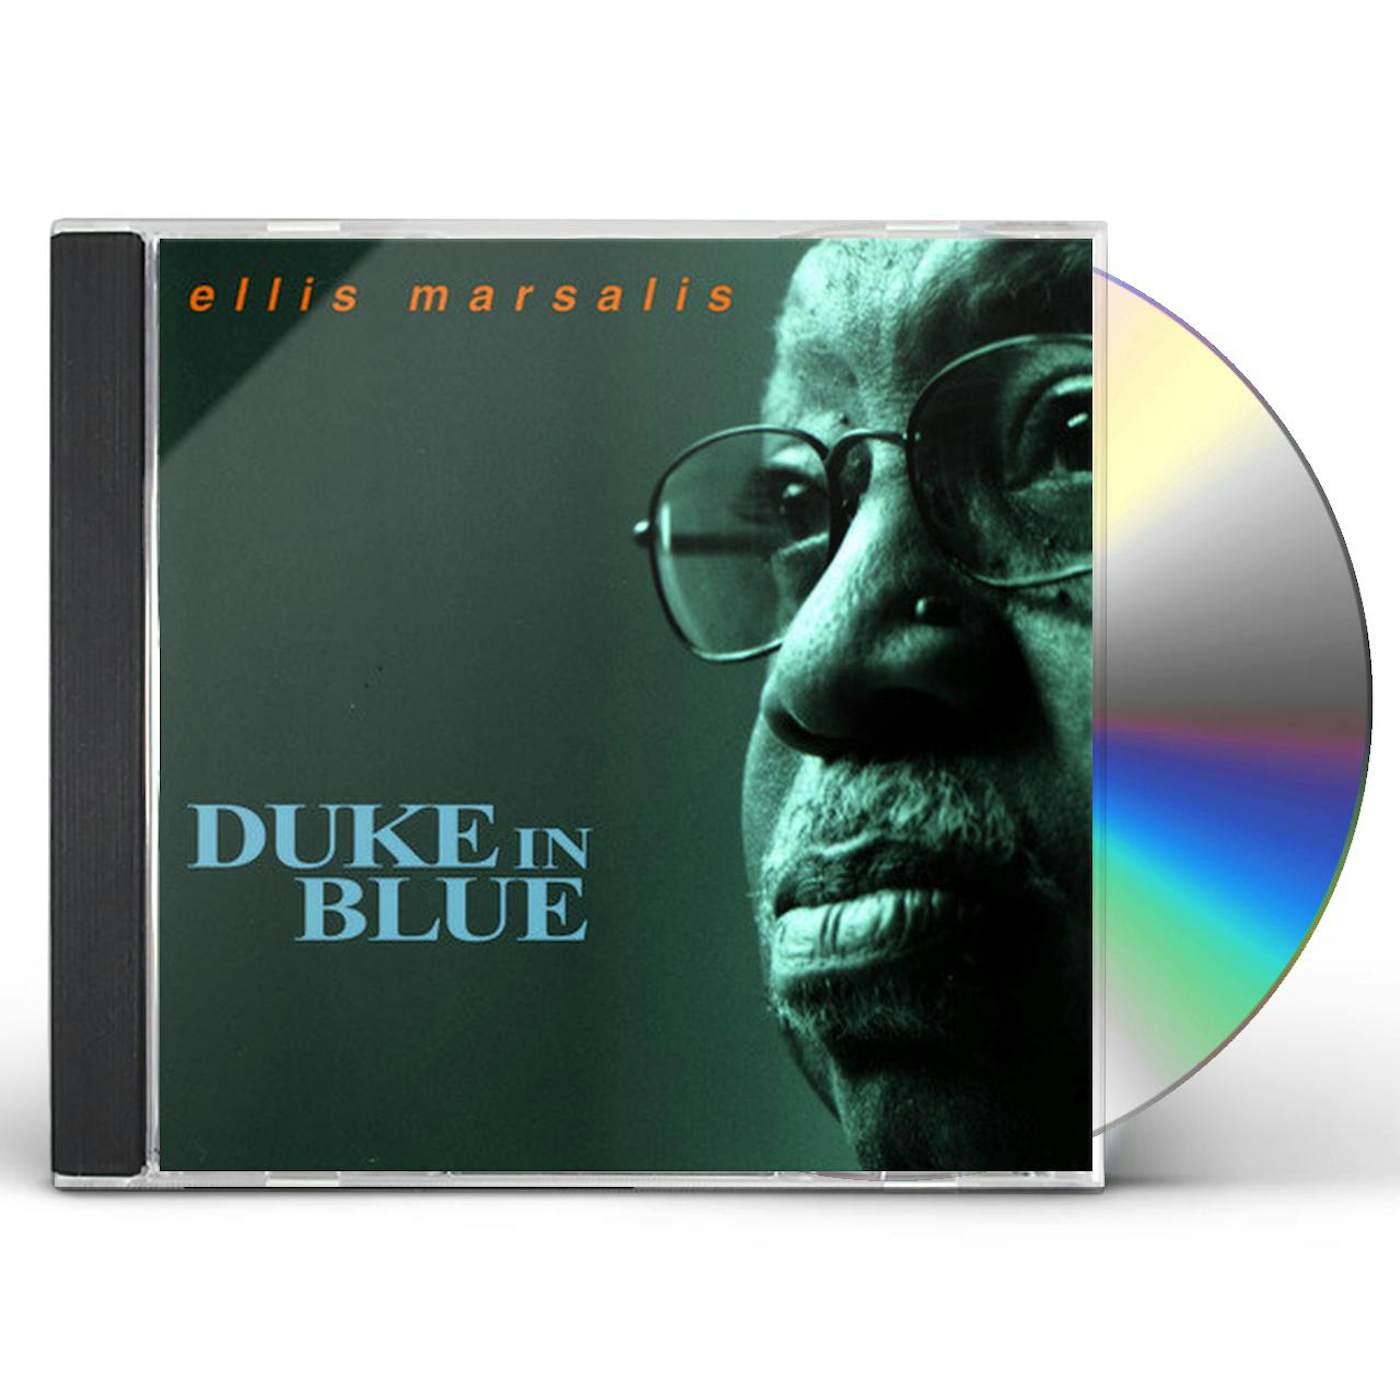 Ellis Marsalis DUKE IN BLUE CD